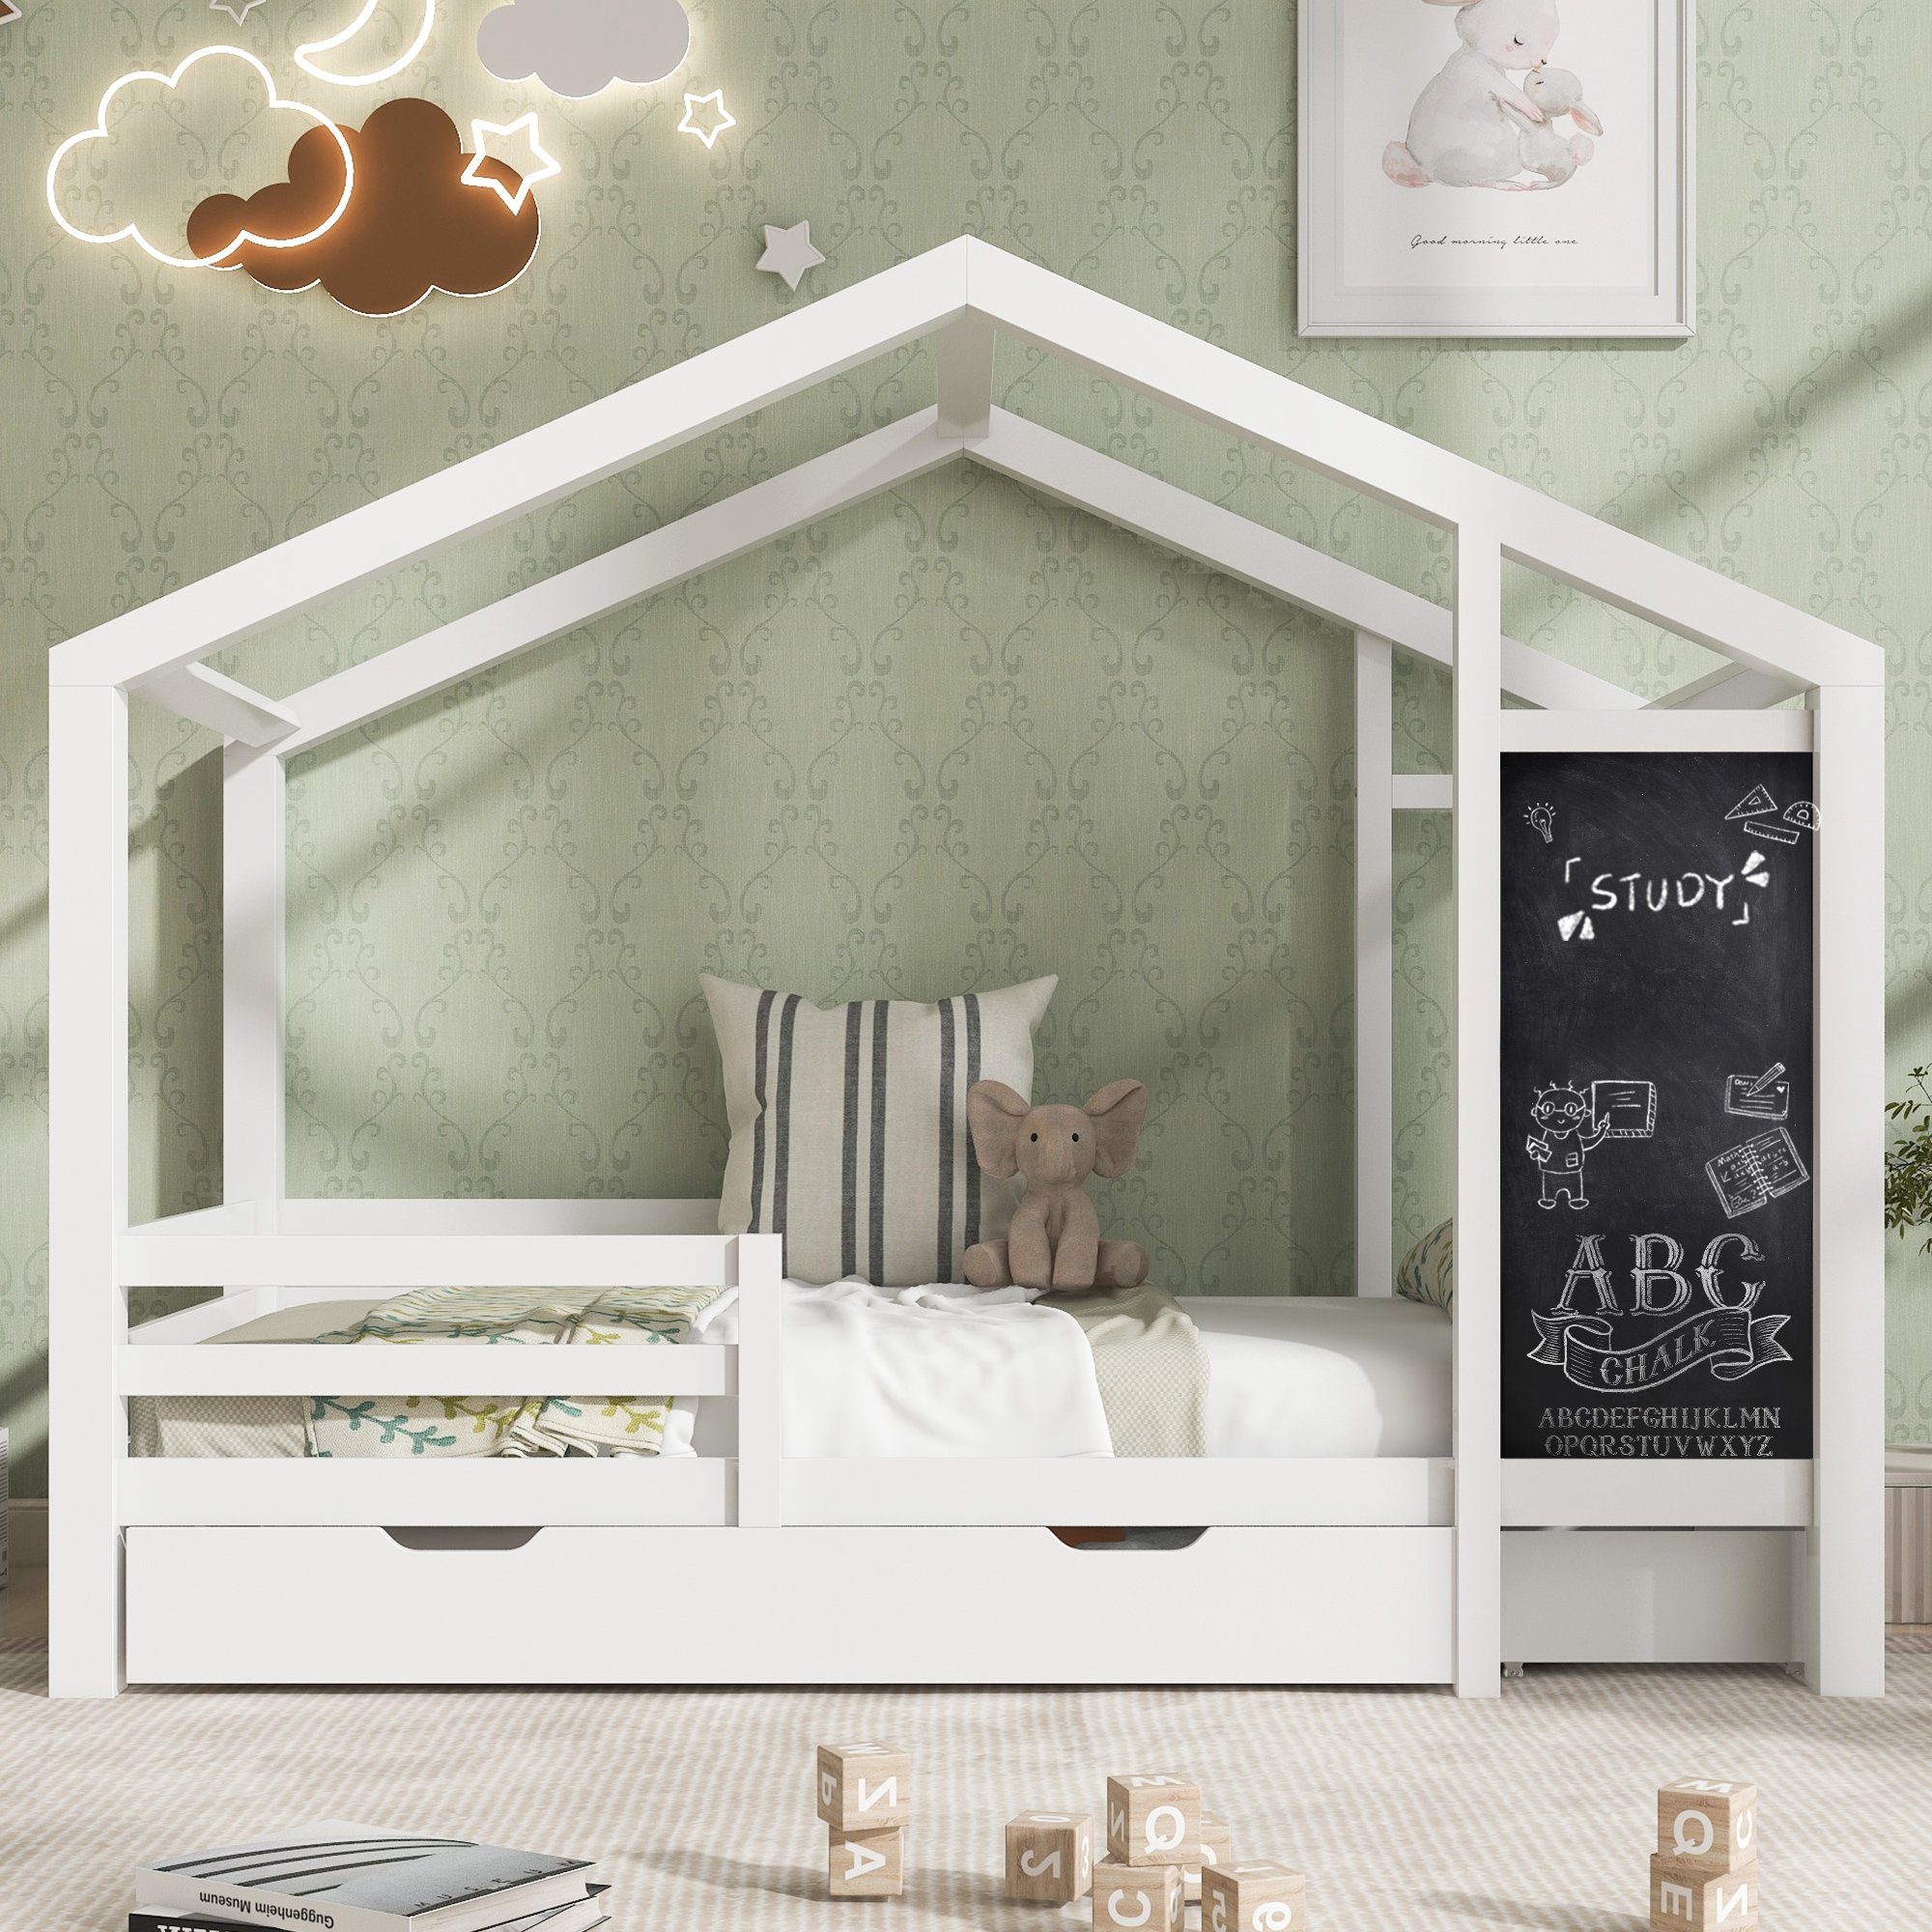 OKWISH Kinderbett 2 mit Zaun Tafel Lattenrost Massivholz Holzbett Bett und Schubladen), Hausbett (Holzbett Kinder und mit Jugendbett